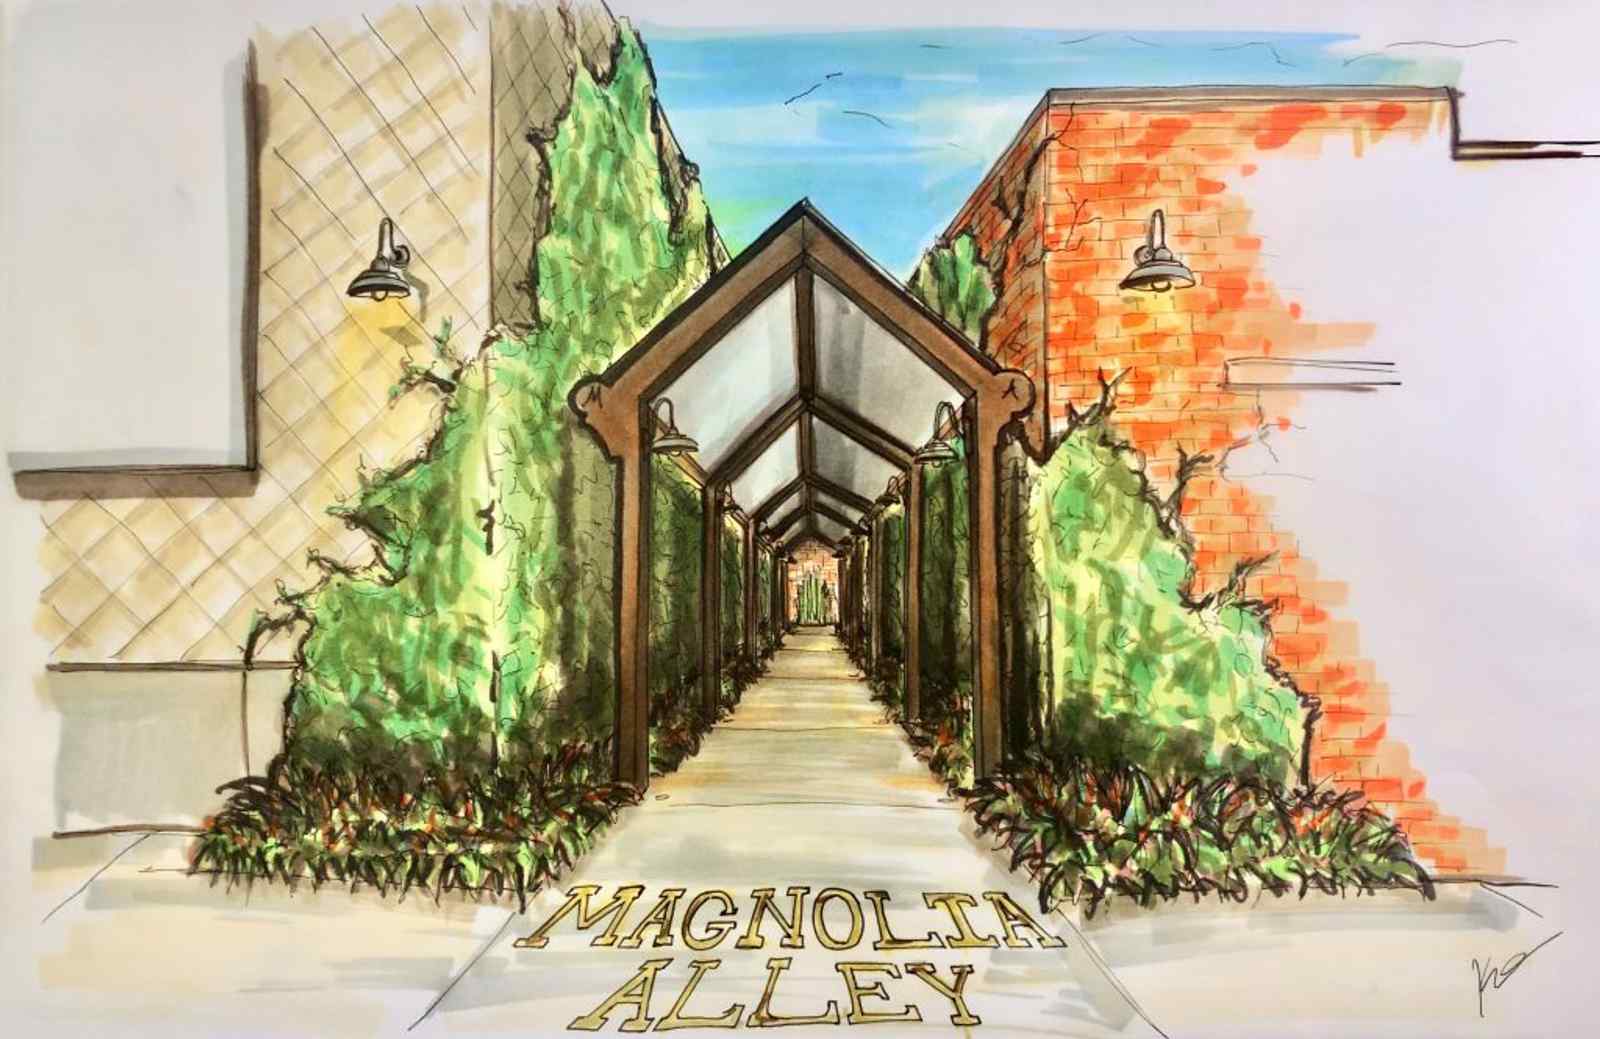 Magnolia Alley